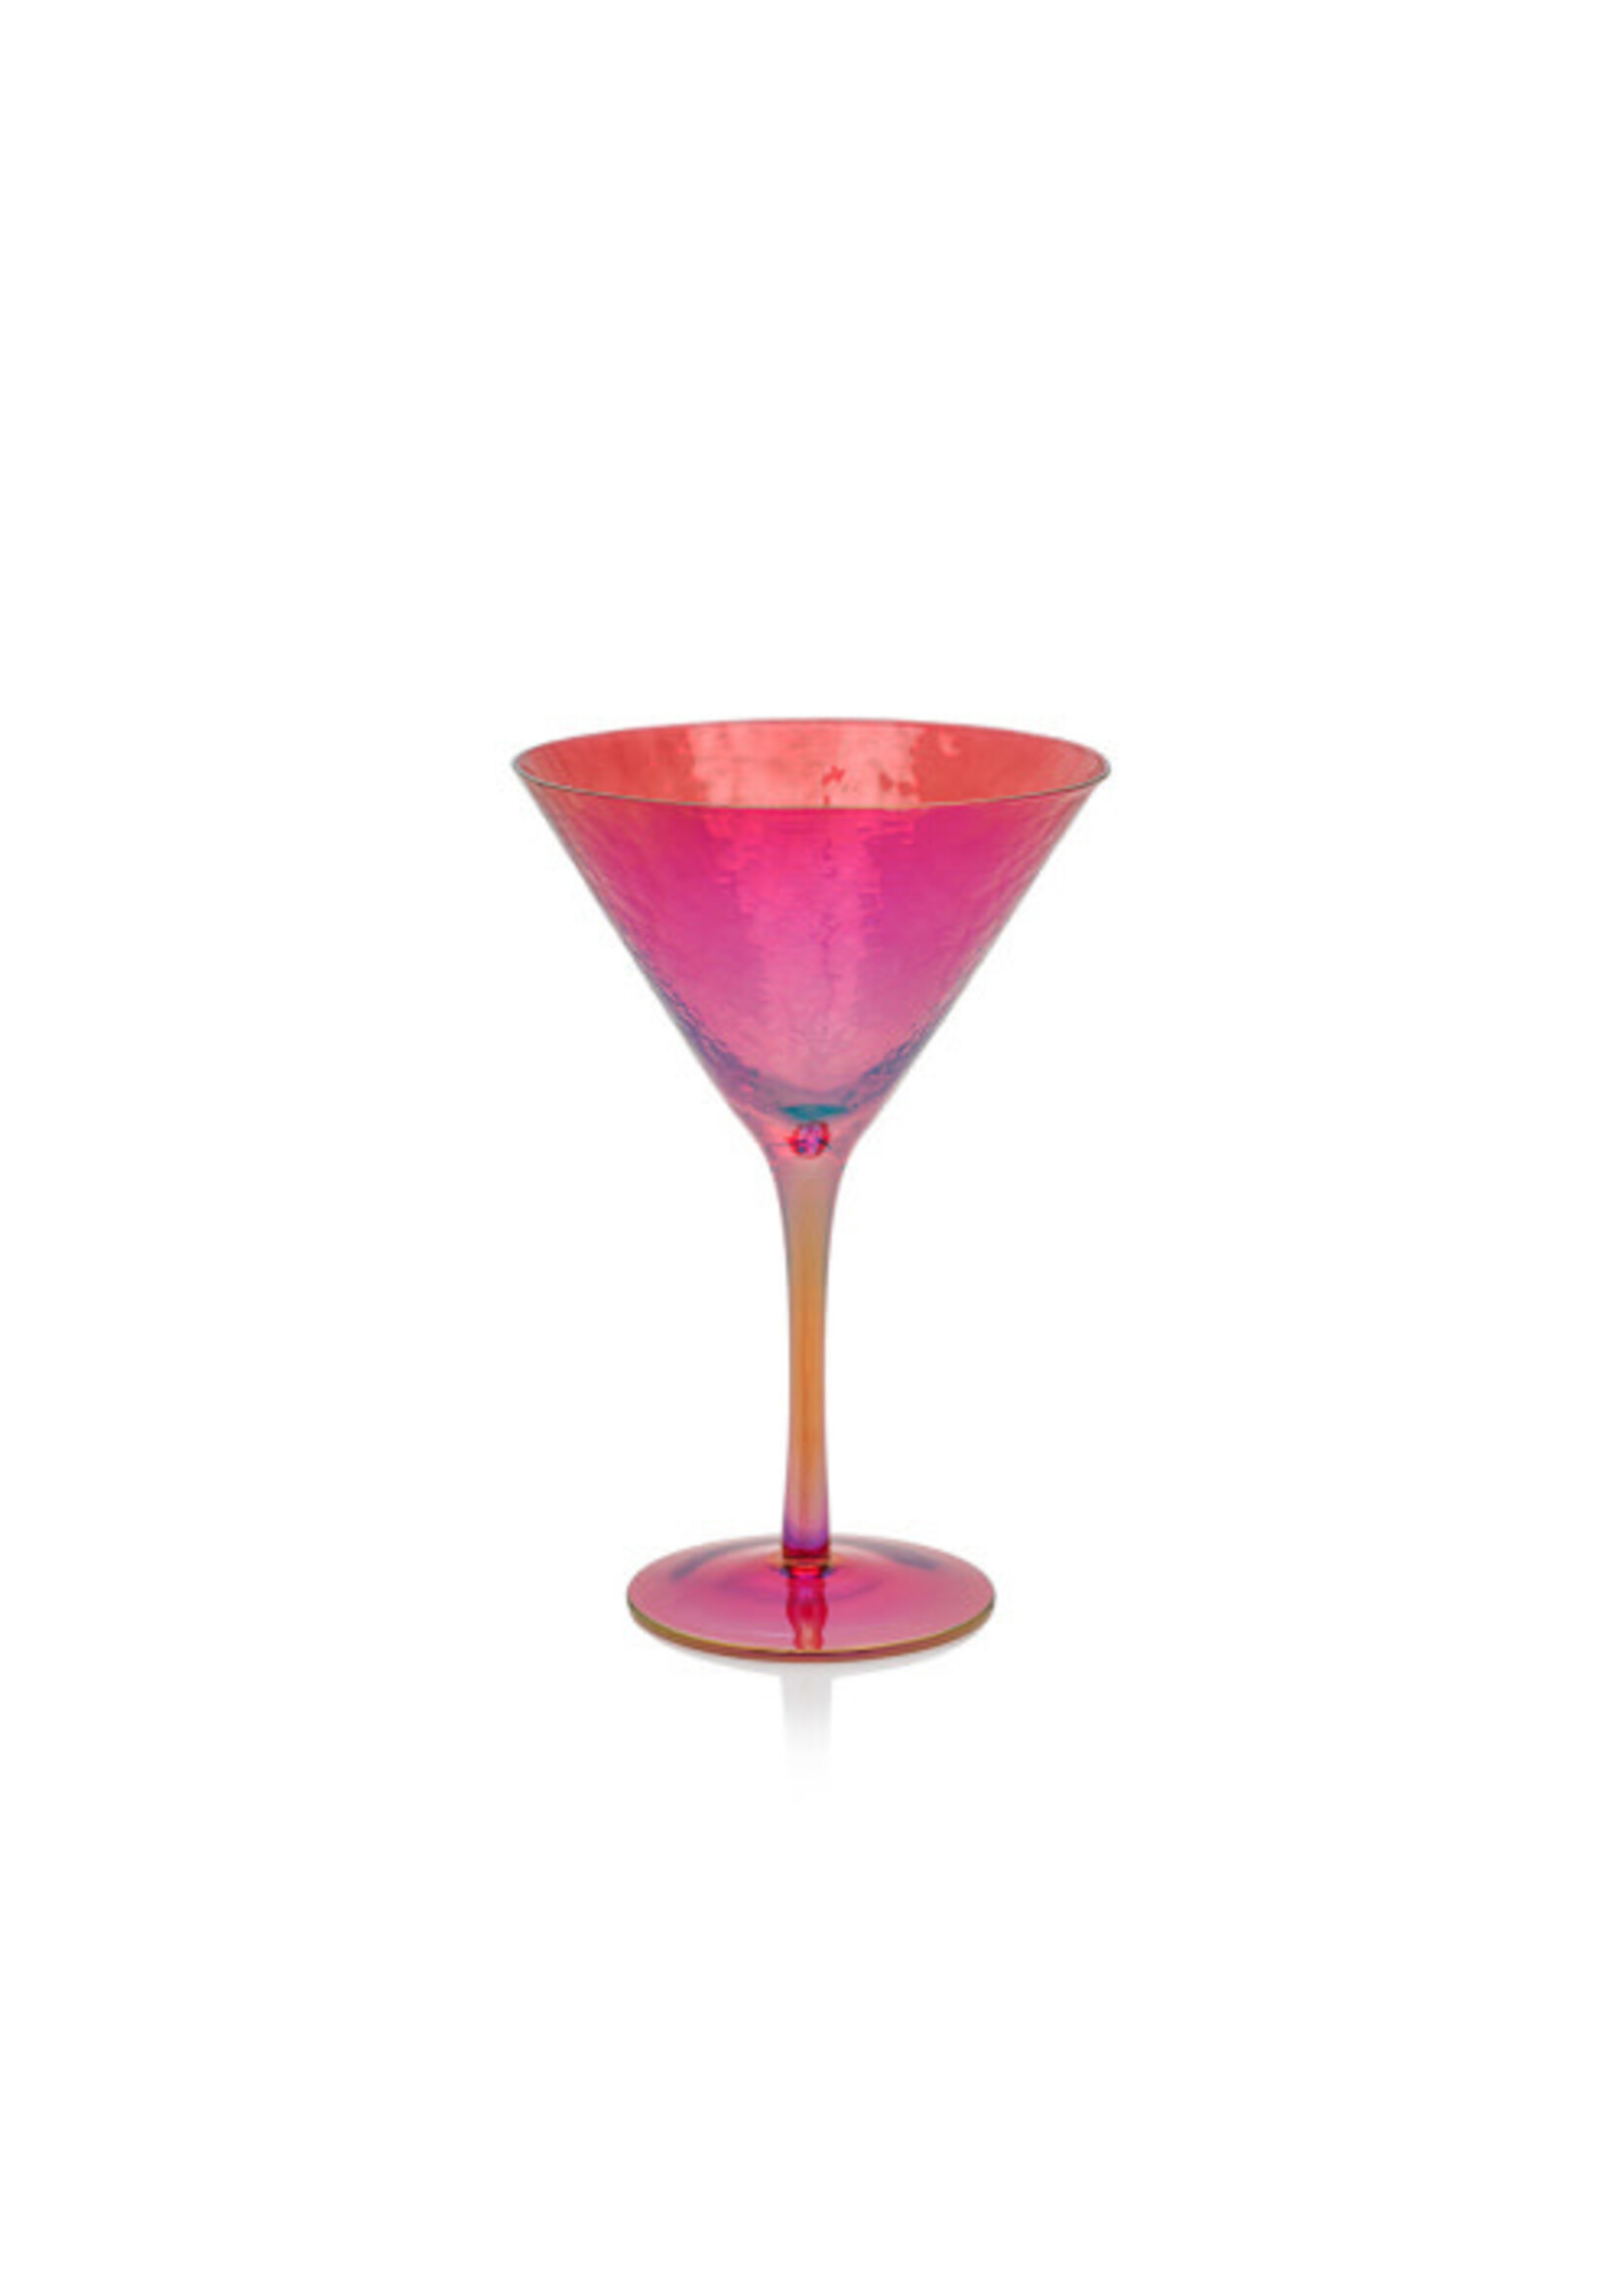 Zodax Aperitivo Martini Glass, Luster Red